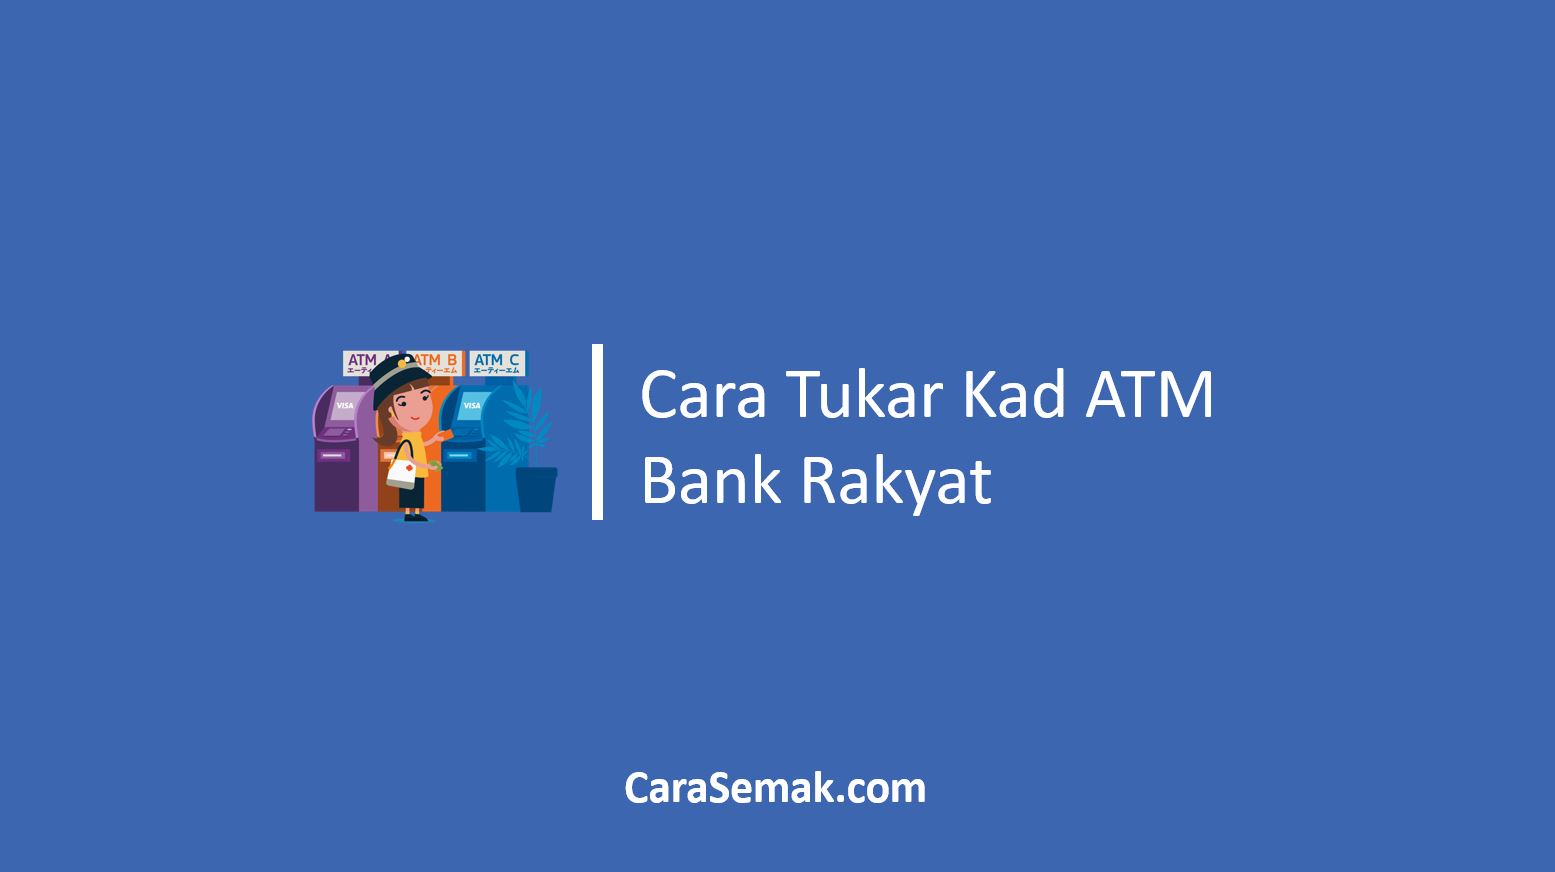 Cara Tukar Kad ATM Bank Rakyat